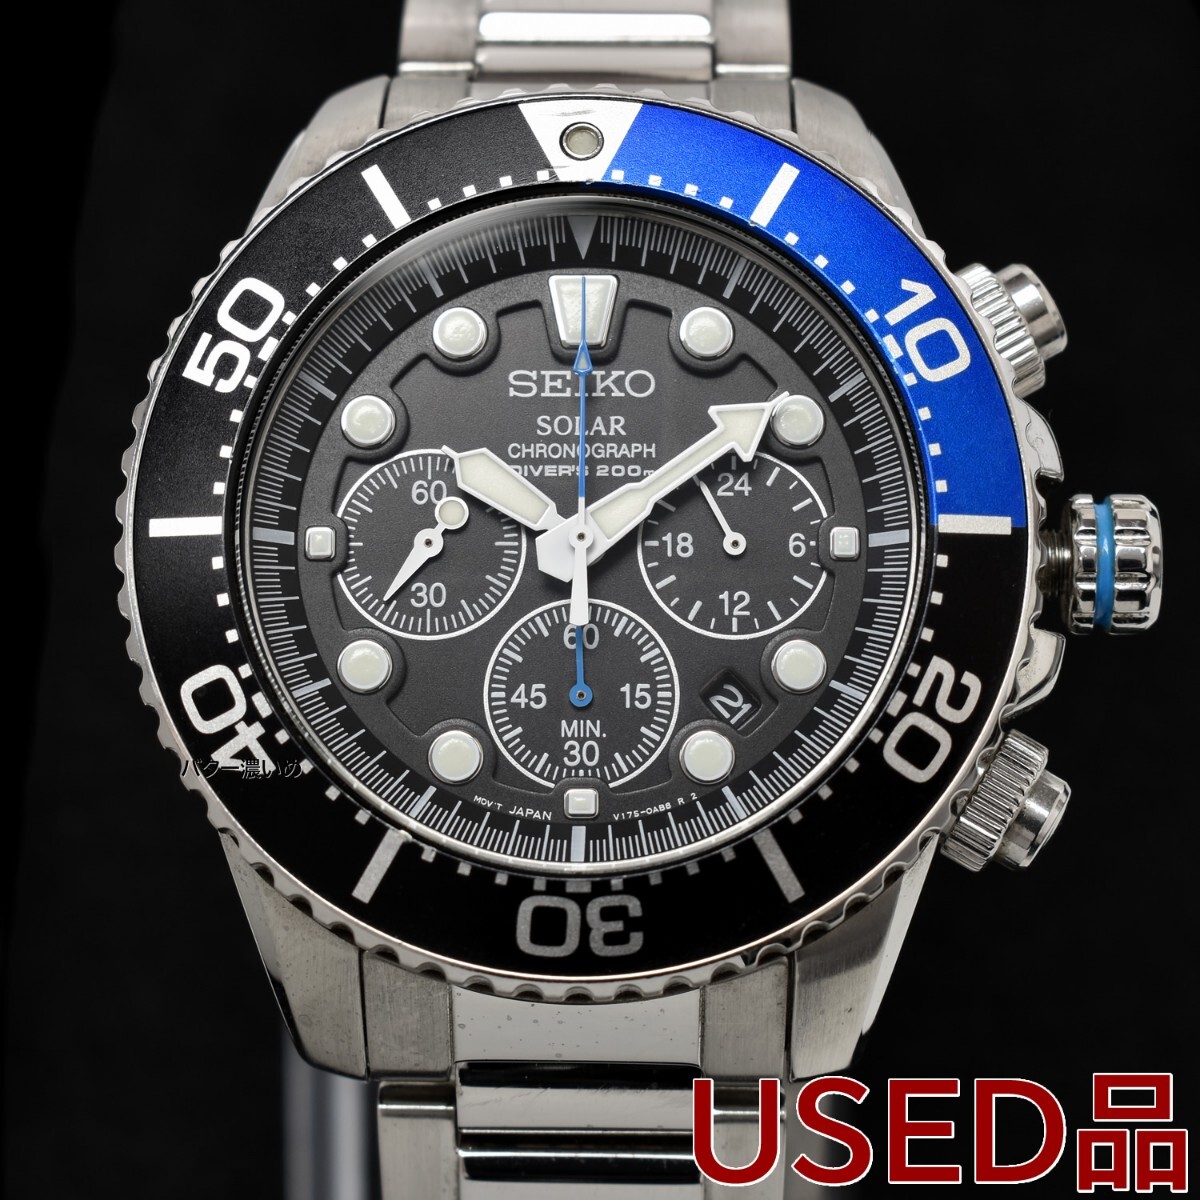 セイコー SEIKO メンズ 腕時計 クロノグラフ ソーラー クオーツ ダイバー 海外モデル SSC017P1 逆輸入 200M防水 ブラック 中古品 箱あり_画像1